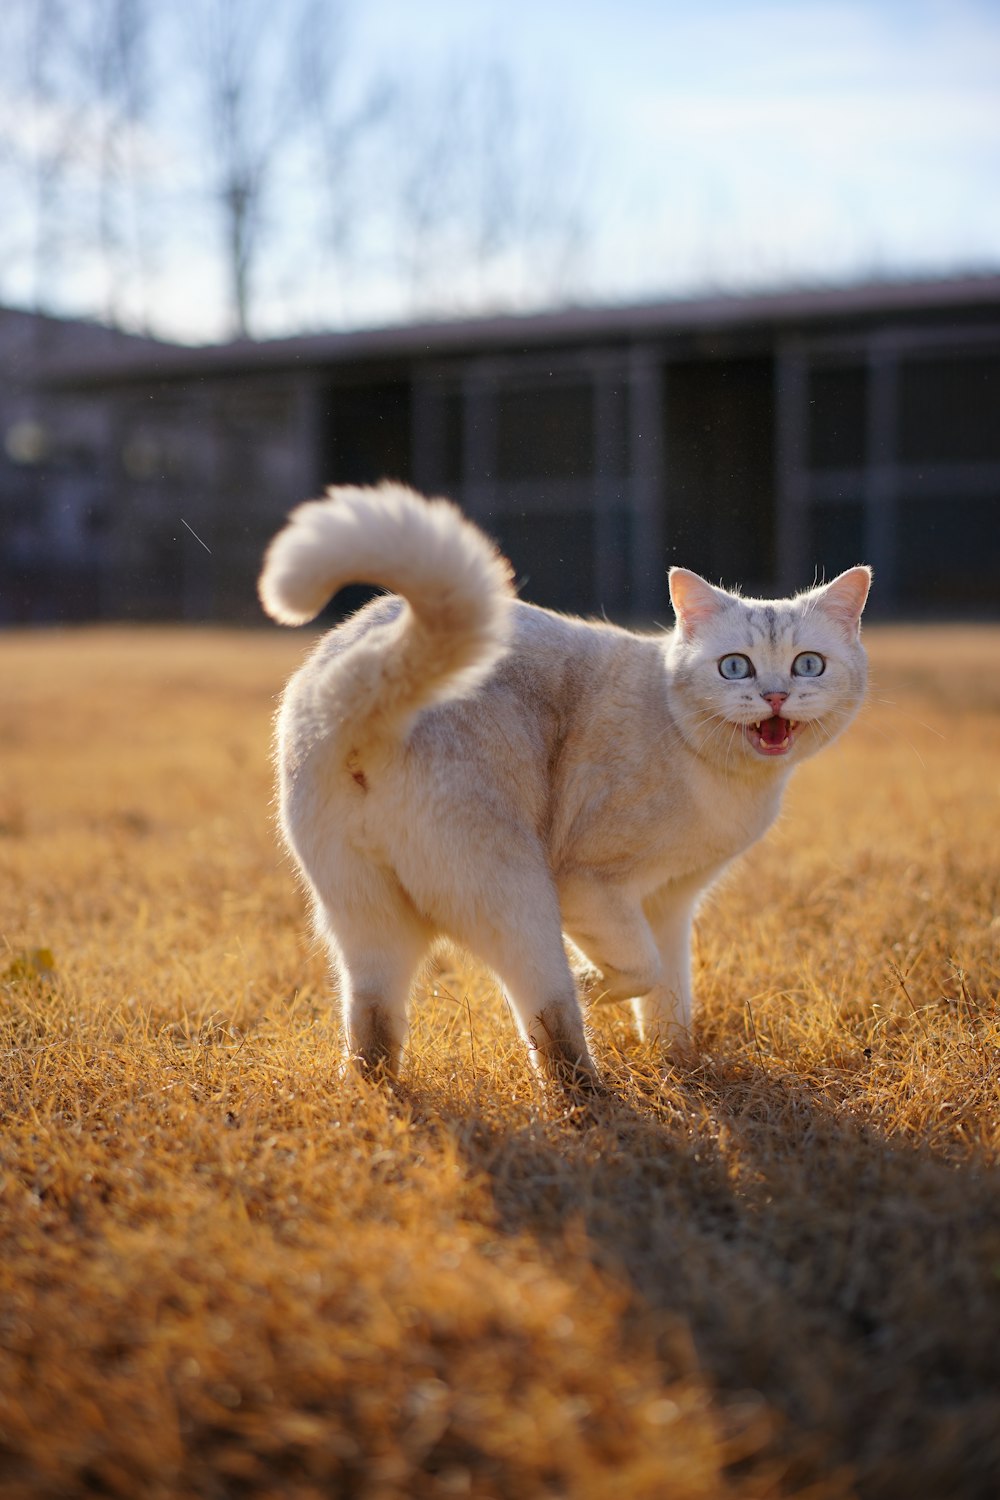 Un chat blanc marchant à travers un champ d'herbe sèche photo